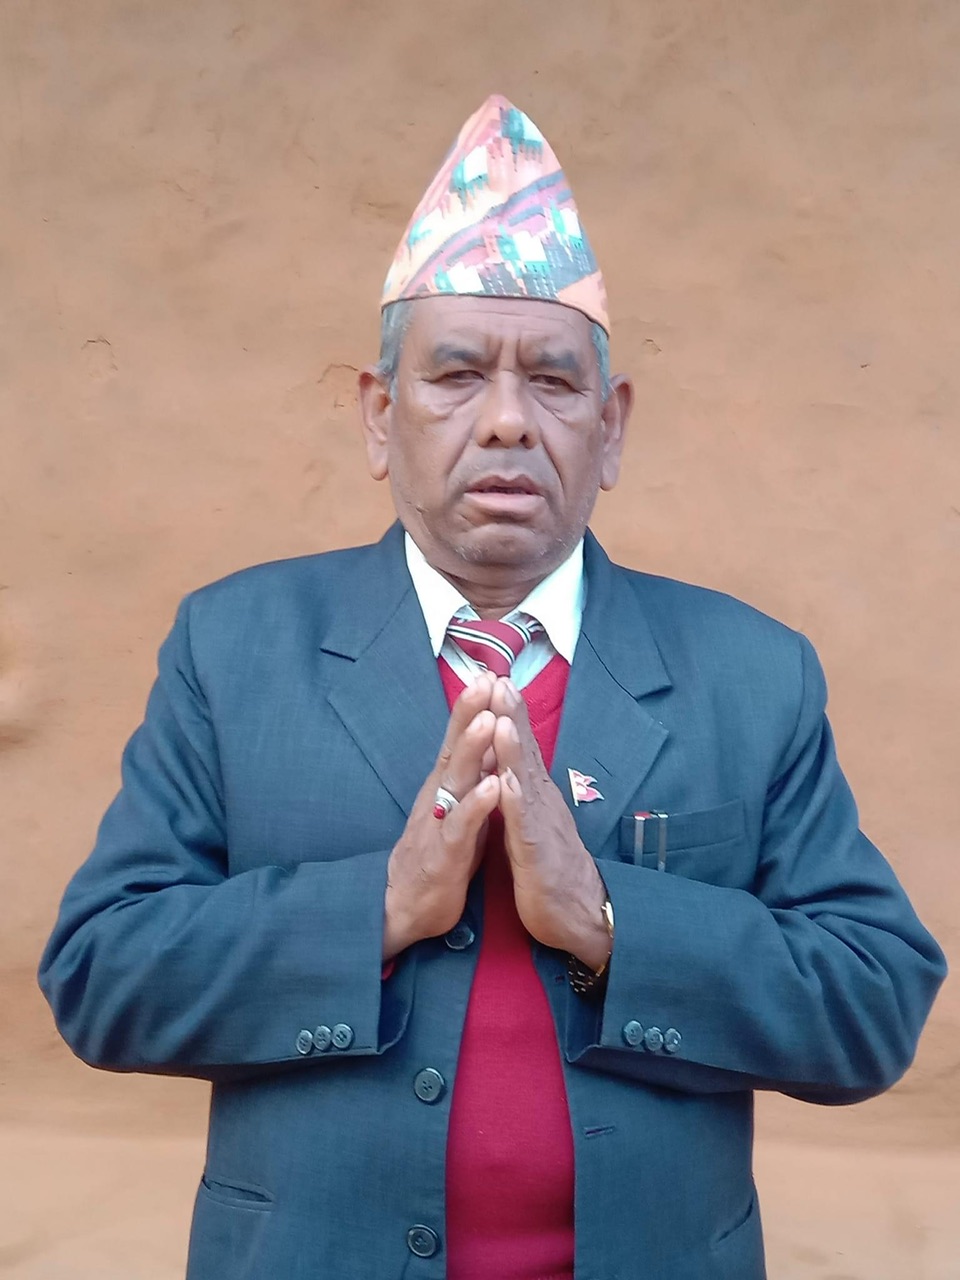 Bhupal Bahadur Thapa